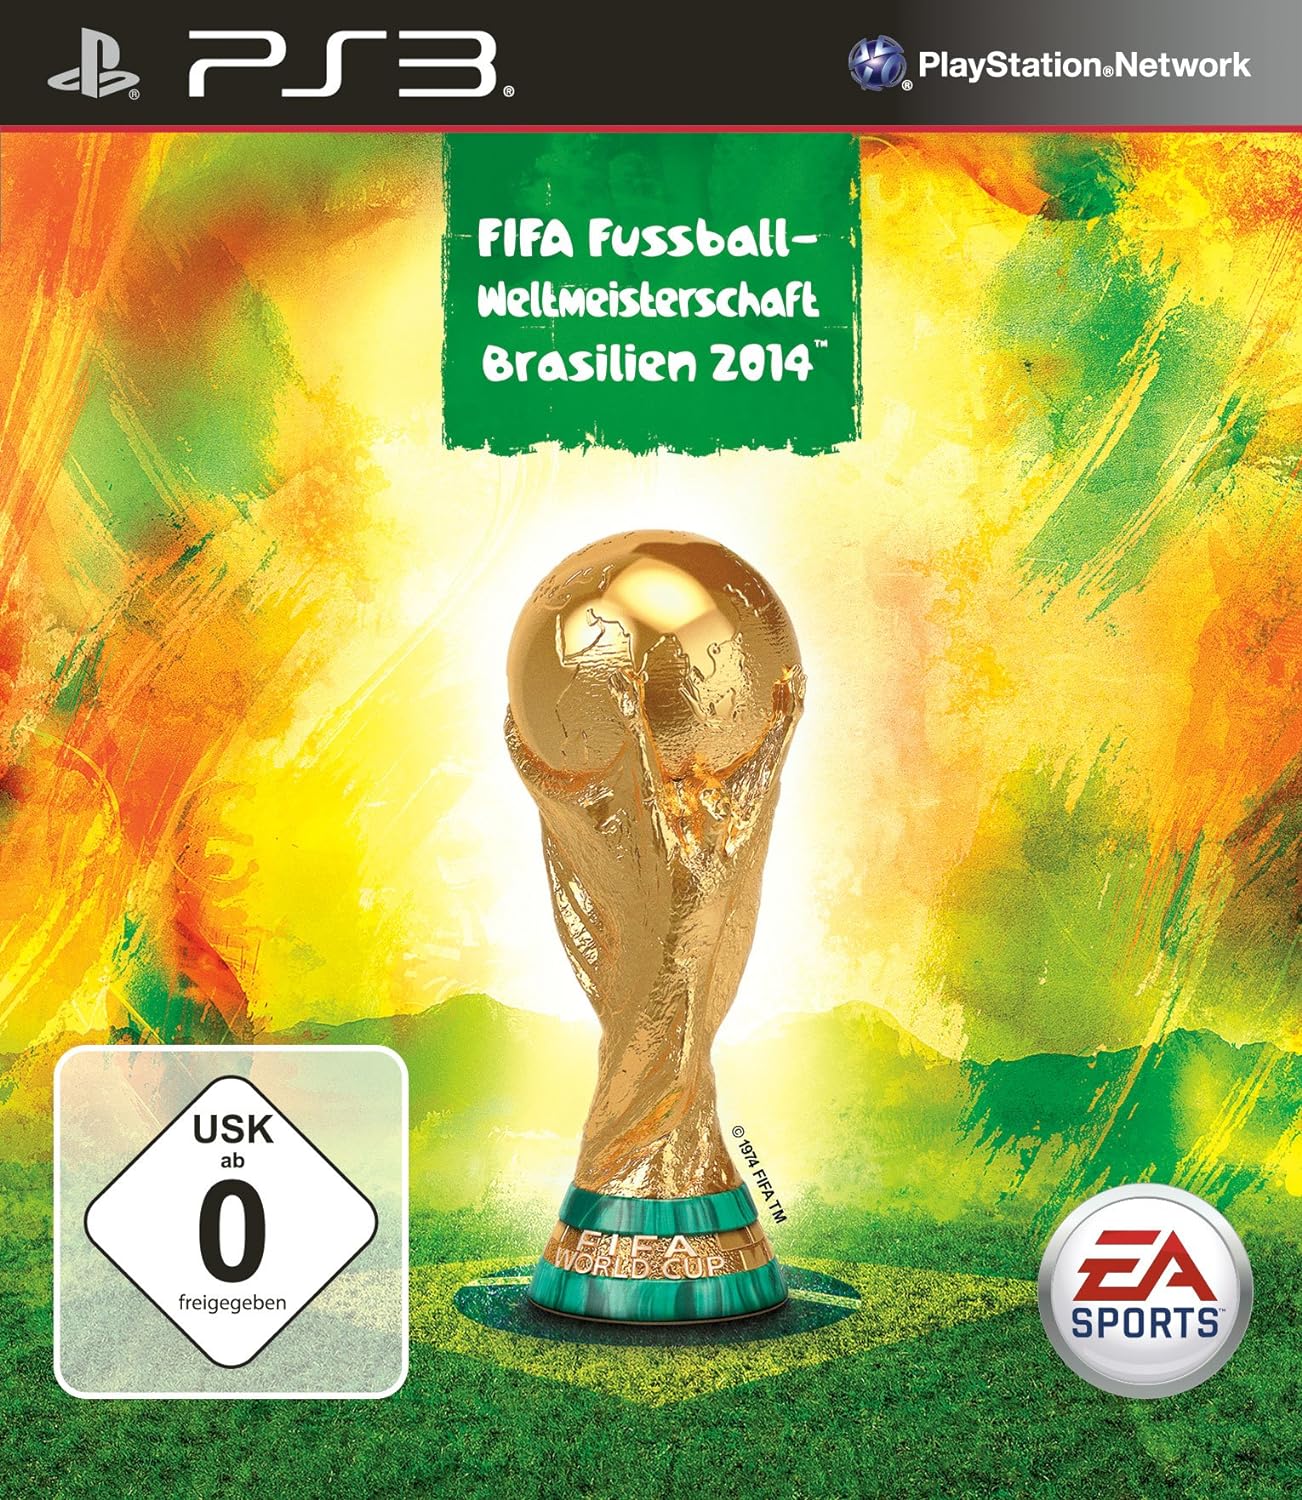 FIFA Fussball-Weltmeisterschaft Brasilien